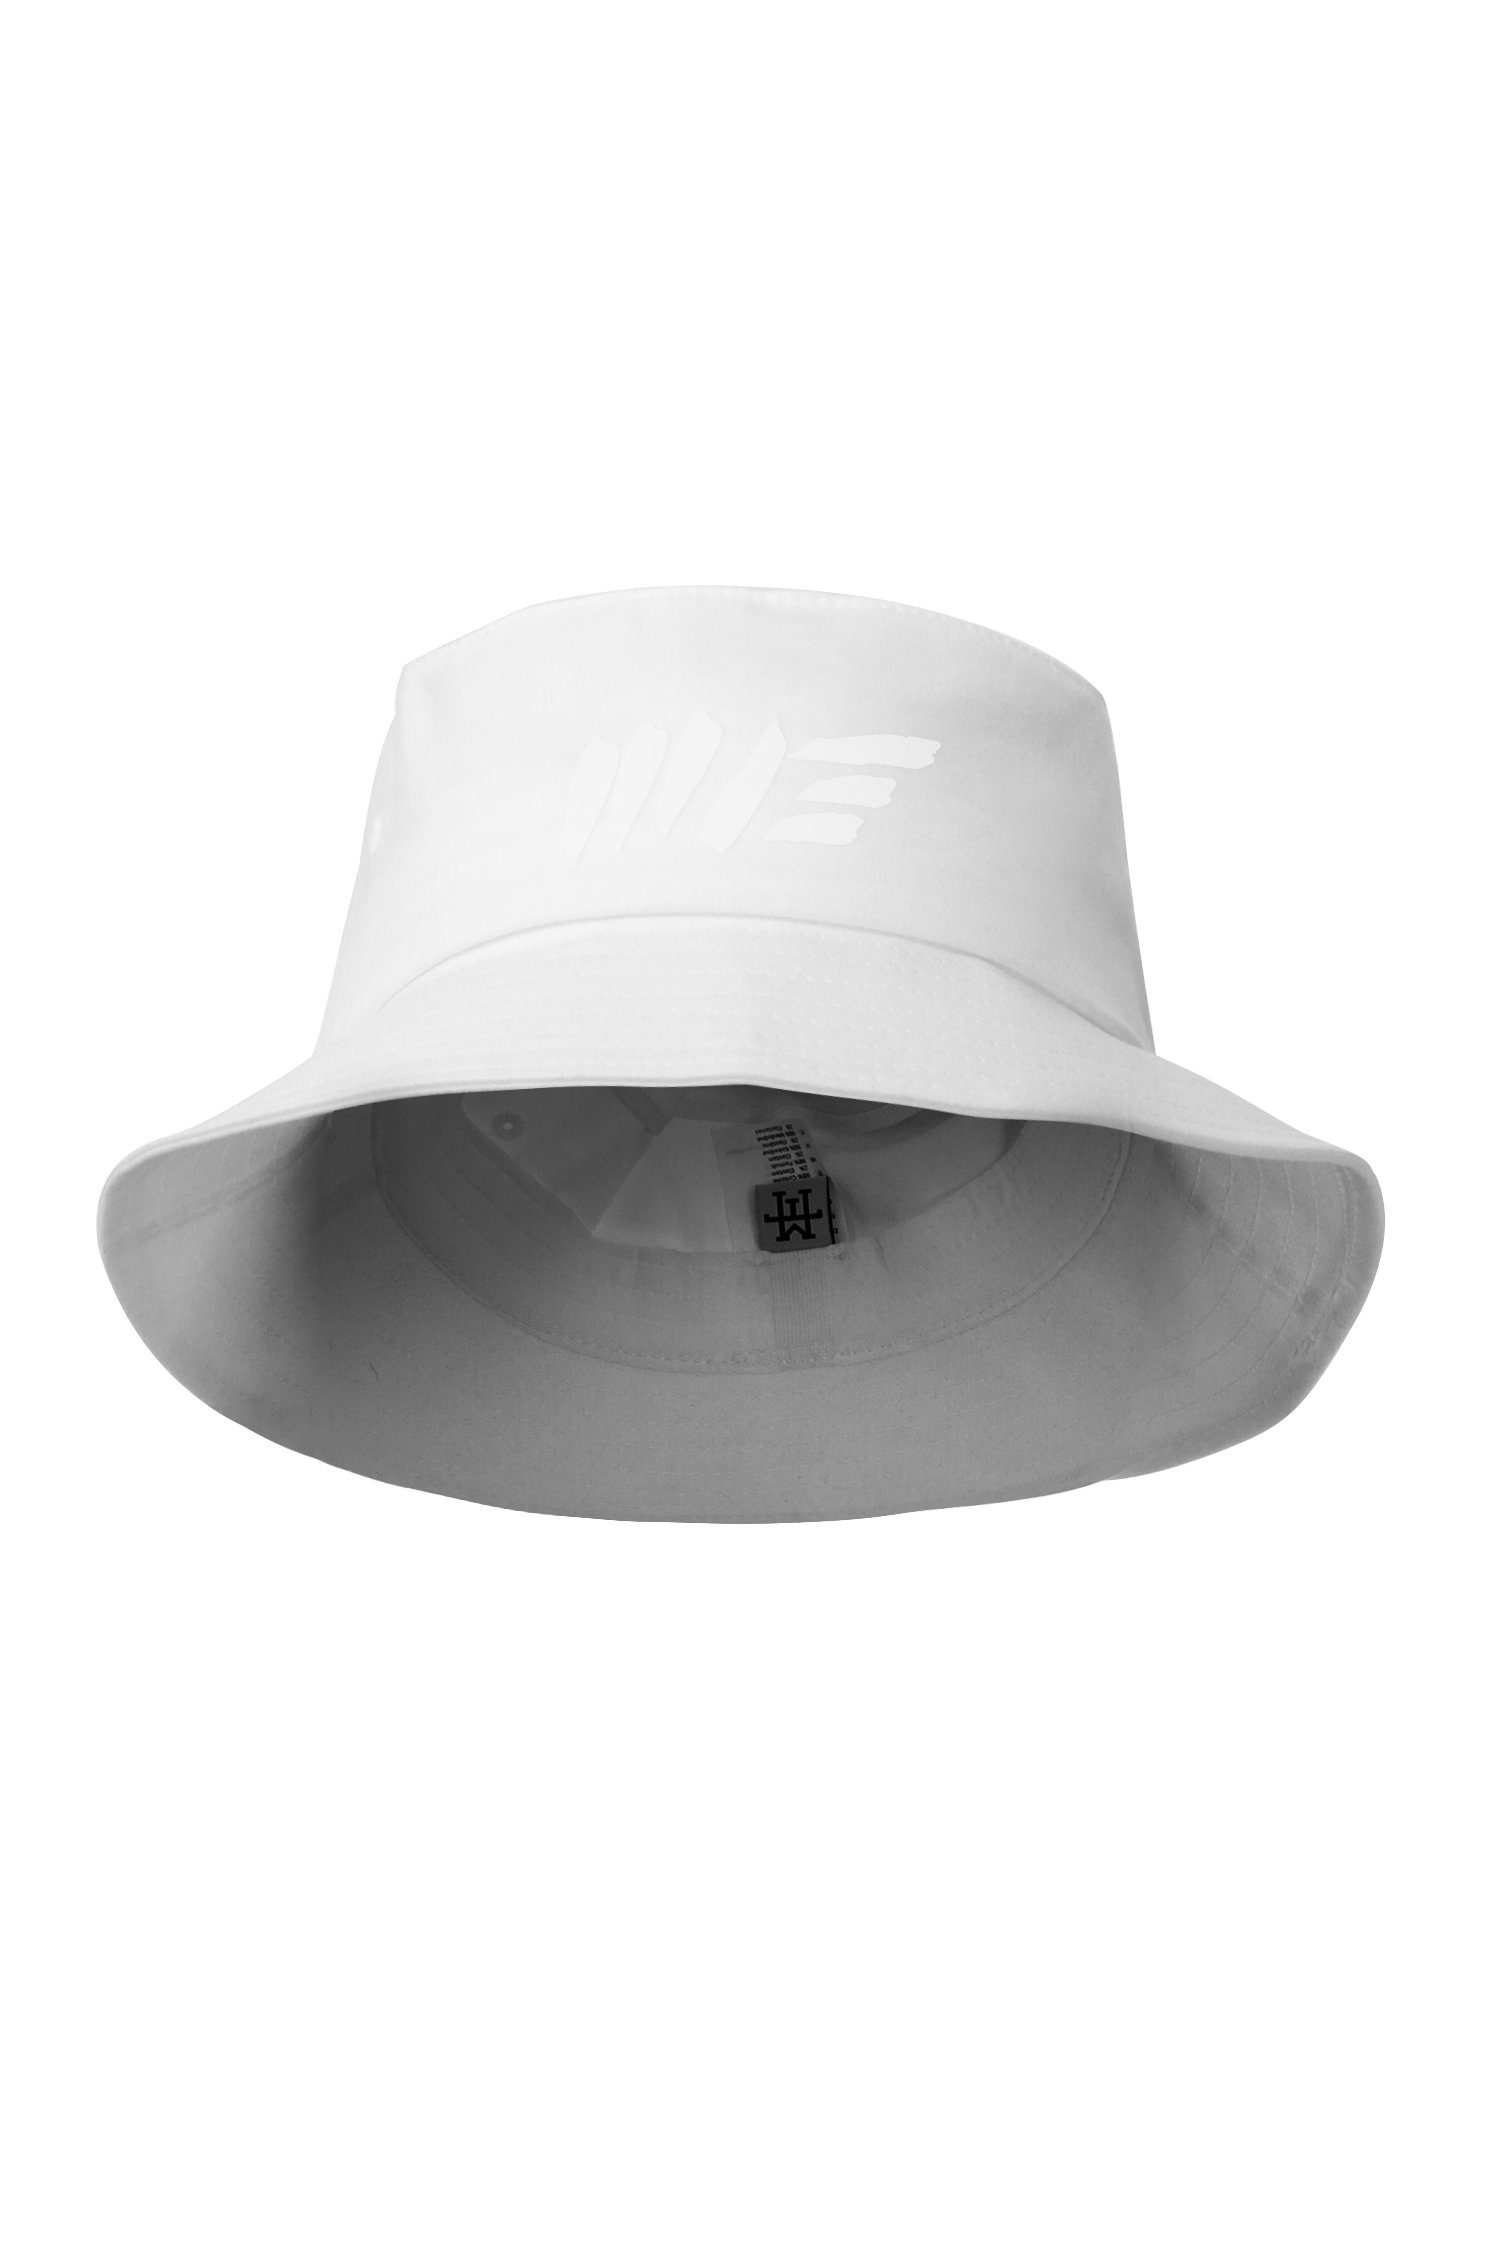 Manufaktur13 Fischerhut M13 Bucket Hat - Anglerhut, Session Hat, Fischermütze 100% Vegan White